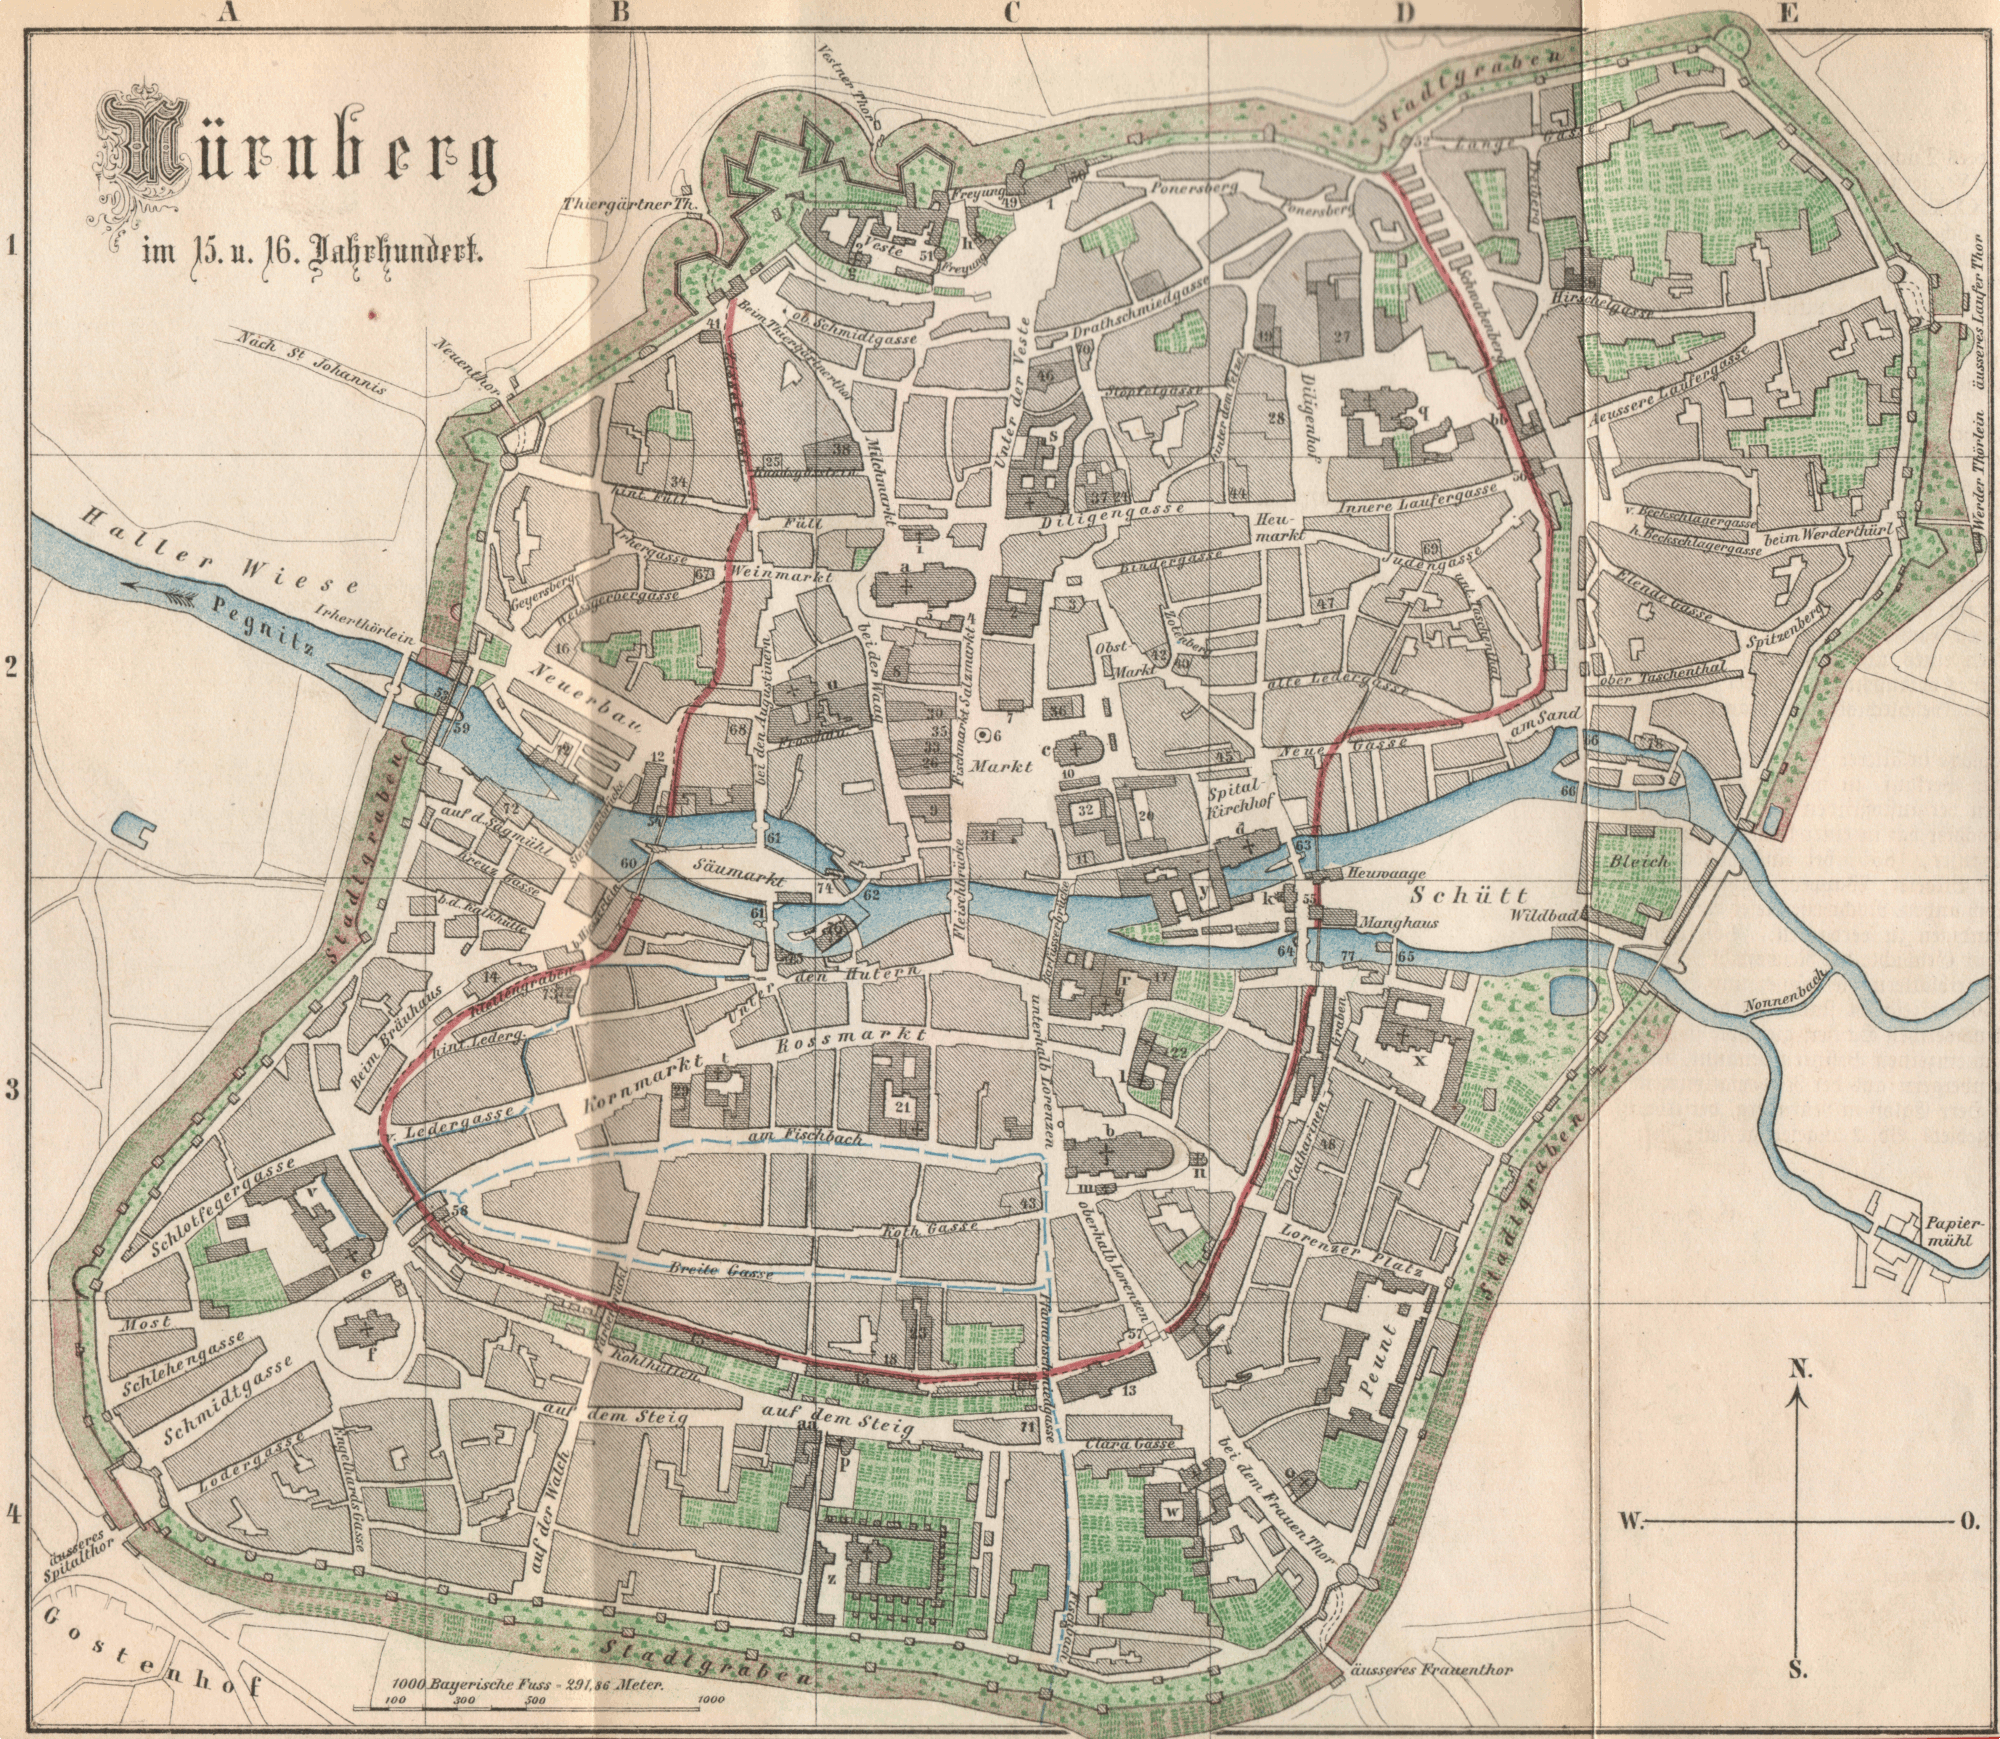 Stadtplan: Nuernberg um 1500. Topografie der Duererzeit. Egloff / Hegel 1874.